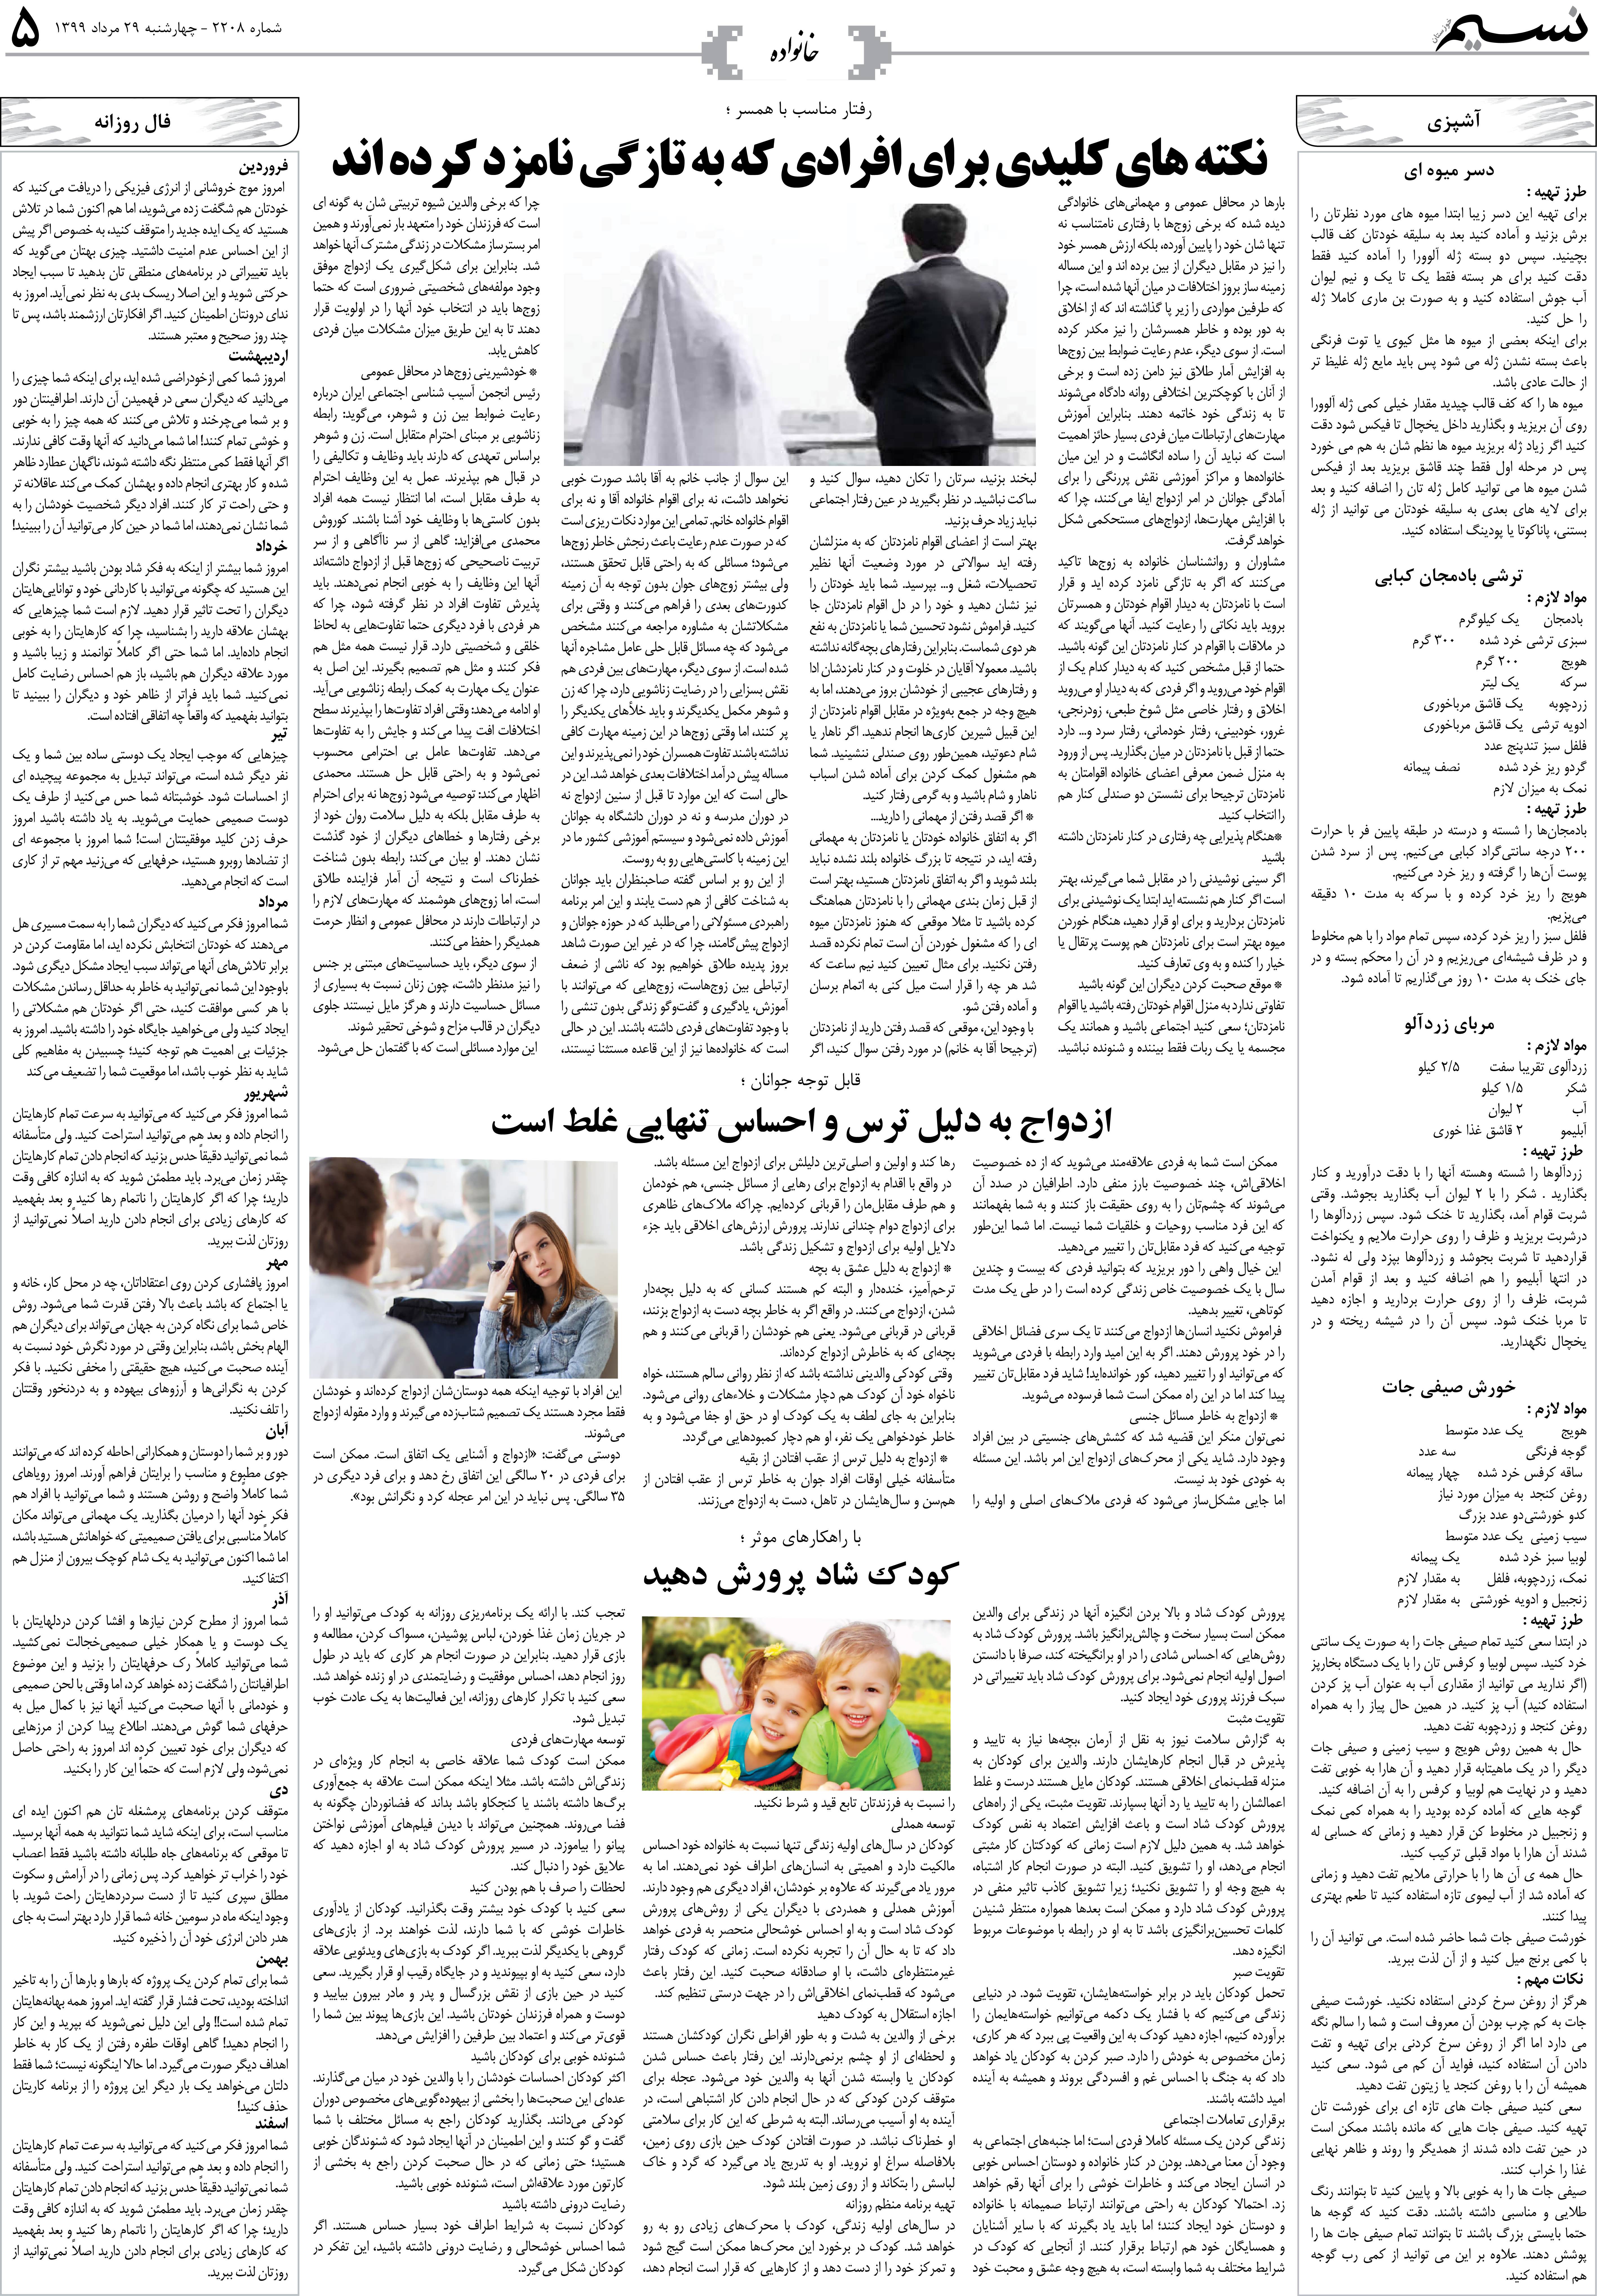 صفحه خانواده روزنامه نسیم شماره 2208